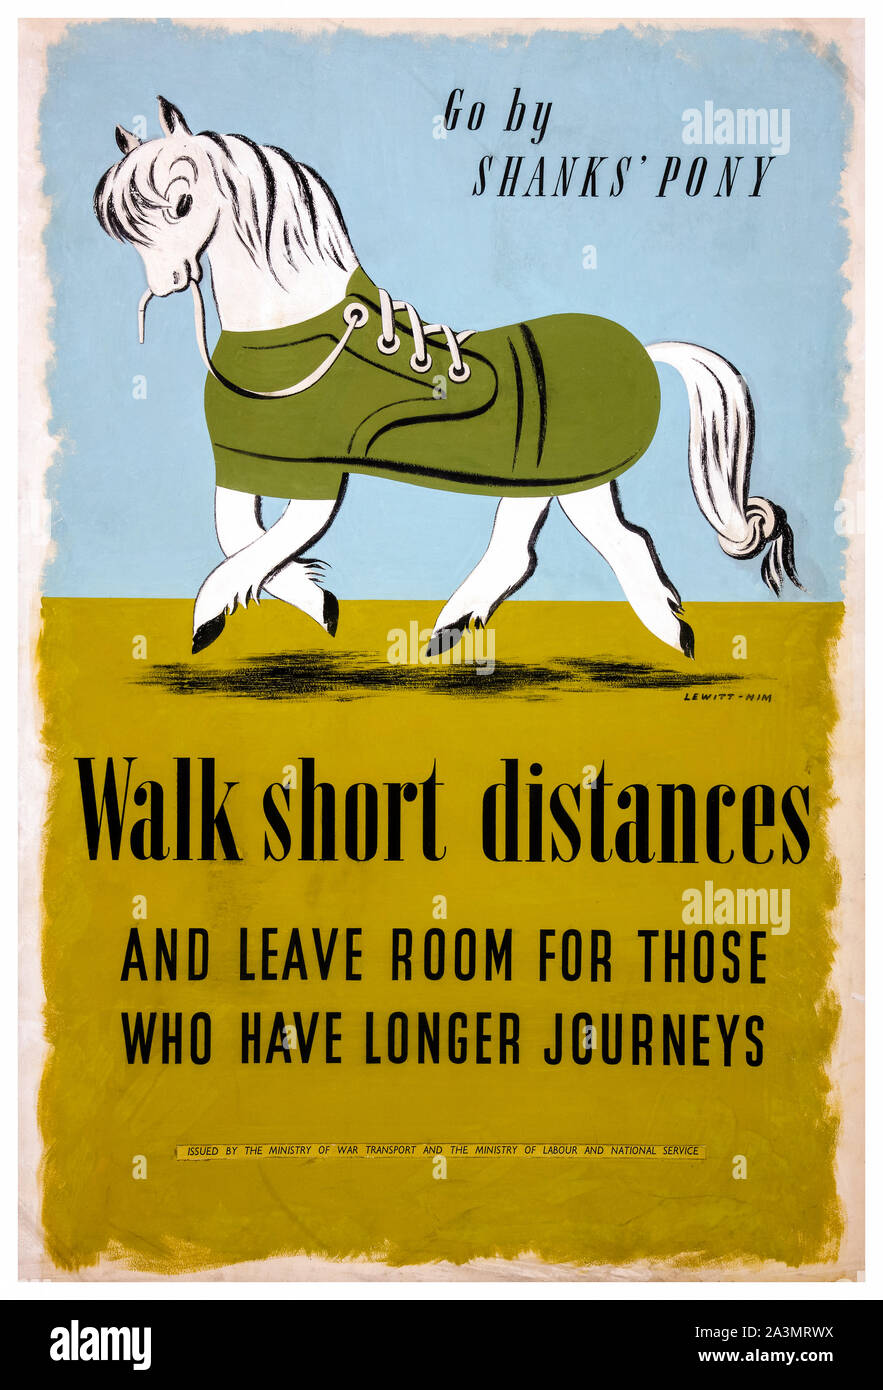 British, WW2, l'efficacité des transports, marcher sur de courtes distances, Shanks' poney, la charge des transports, de l'affiche, 1939-1946 Banque D'Images